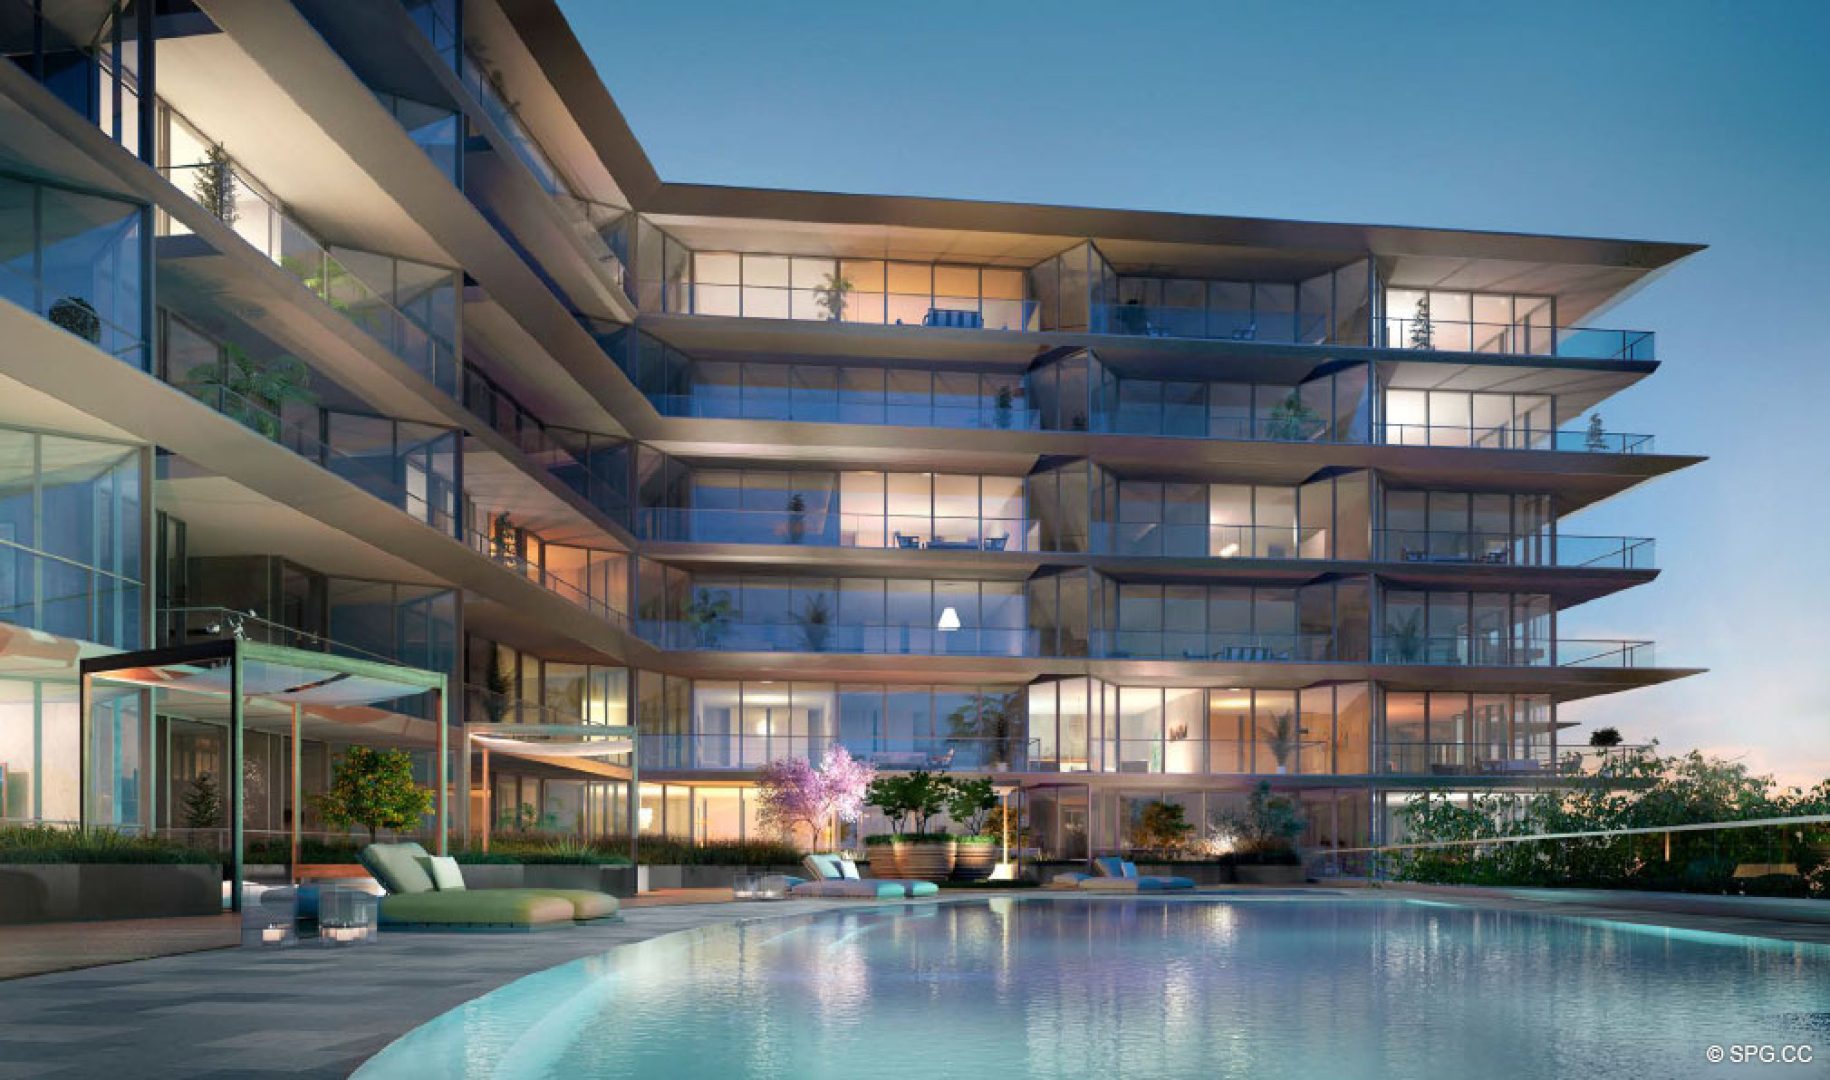 Poolside at 3900 Alton, Luxury Waterfront Condos in Miami Beach, Florida 33140